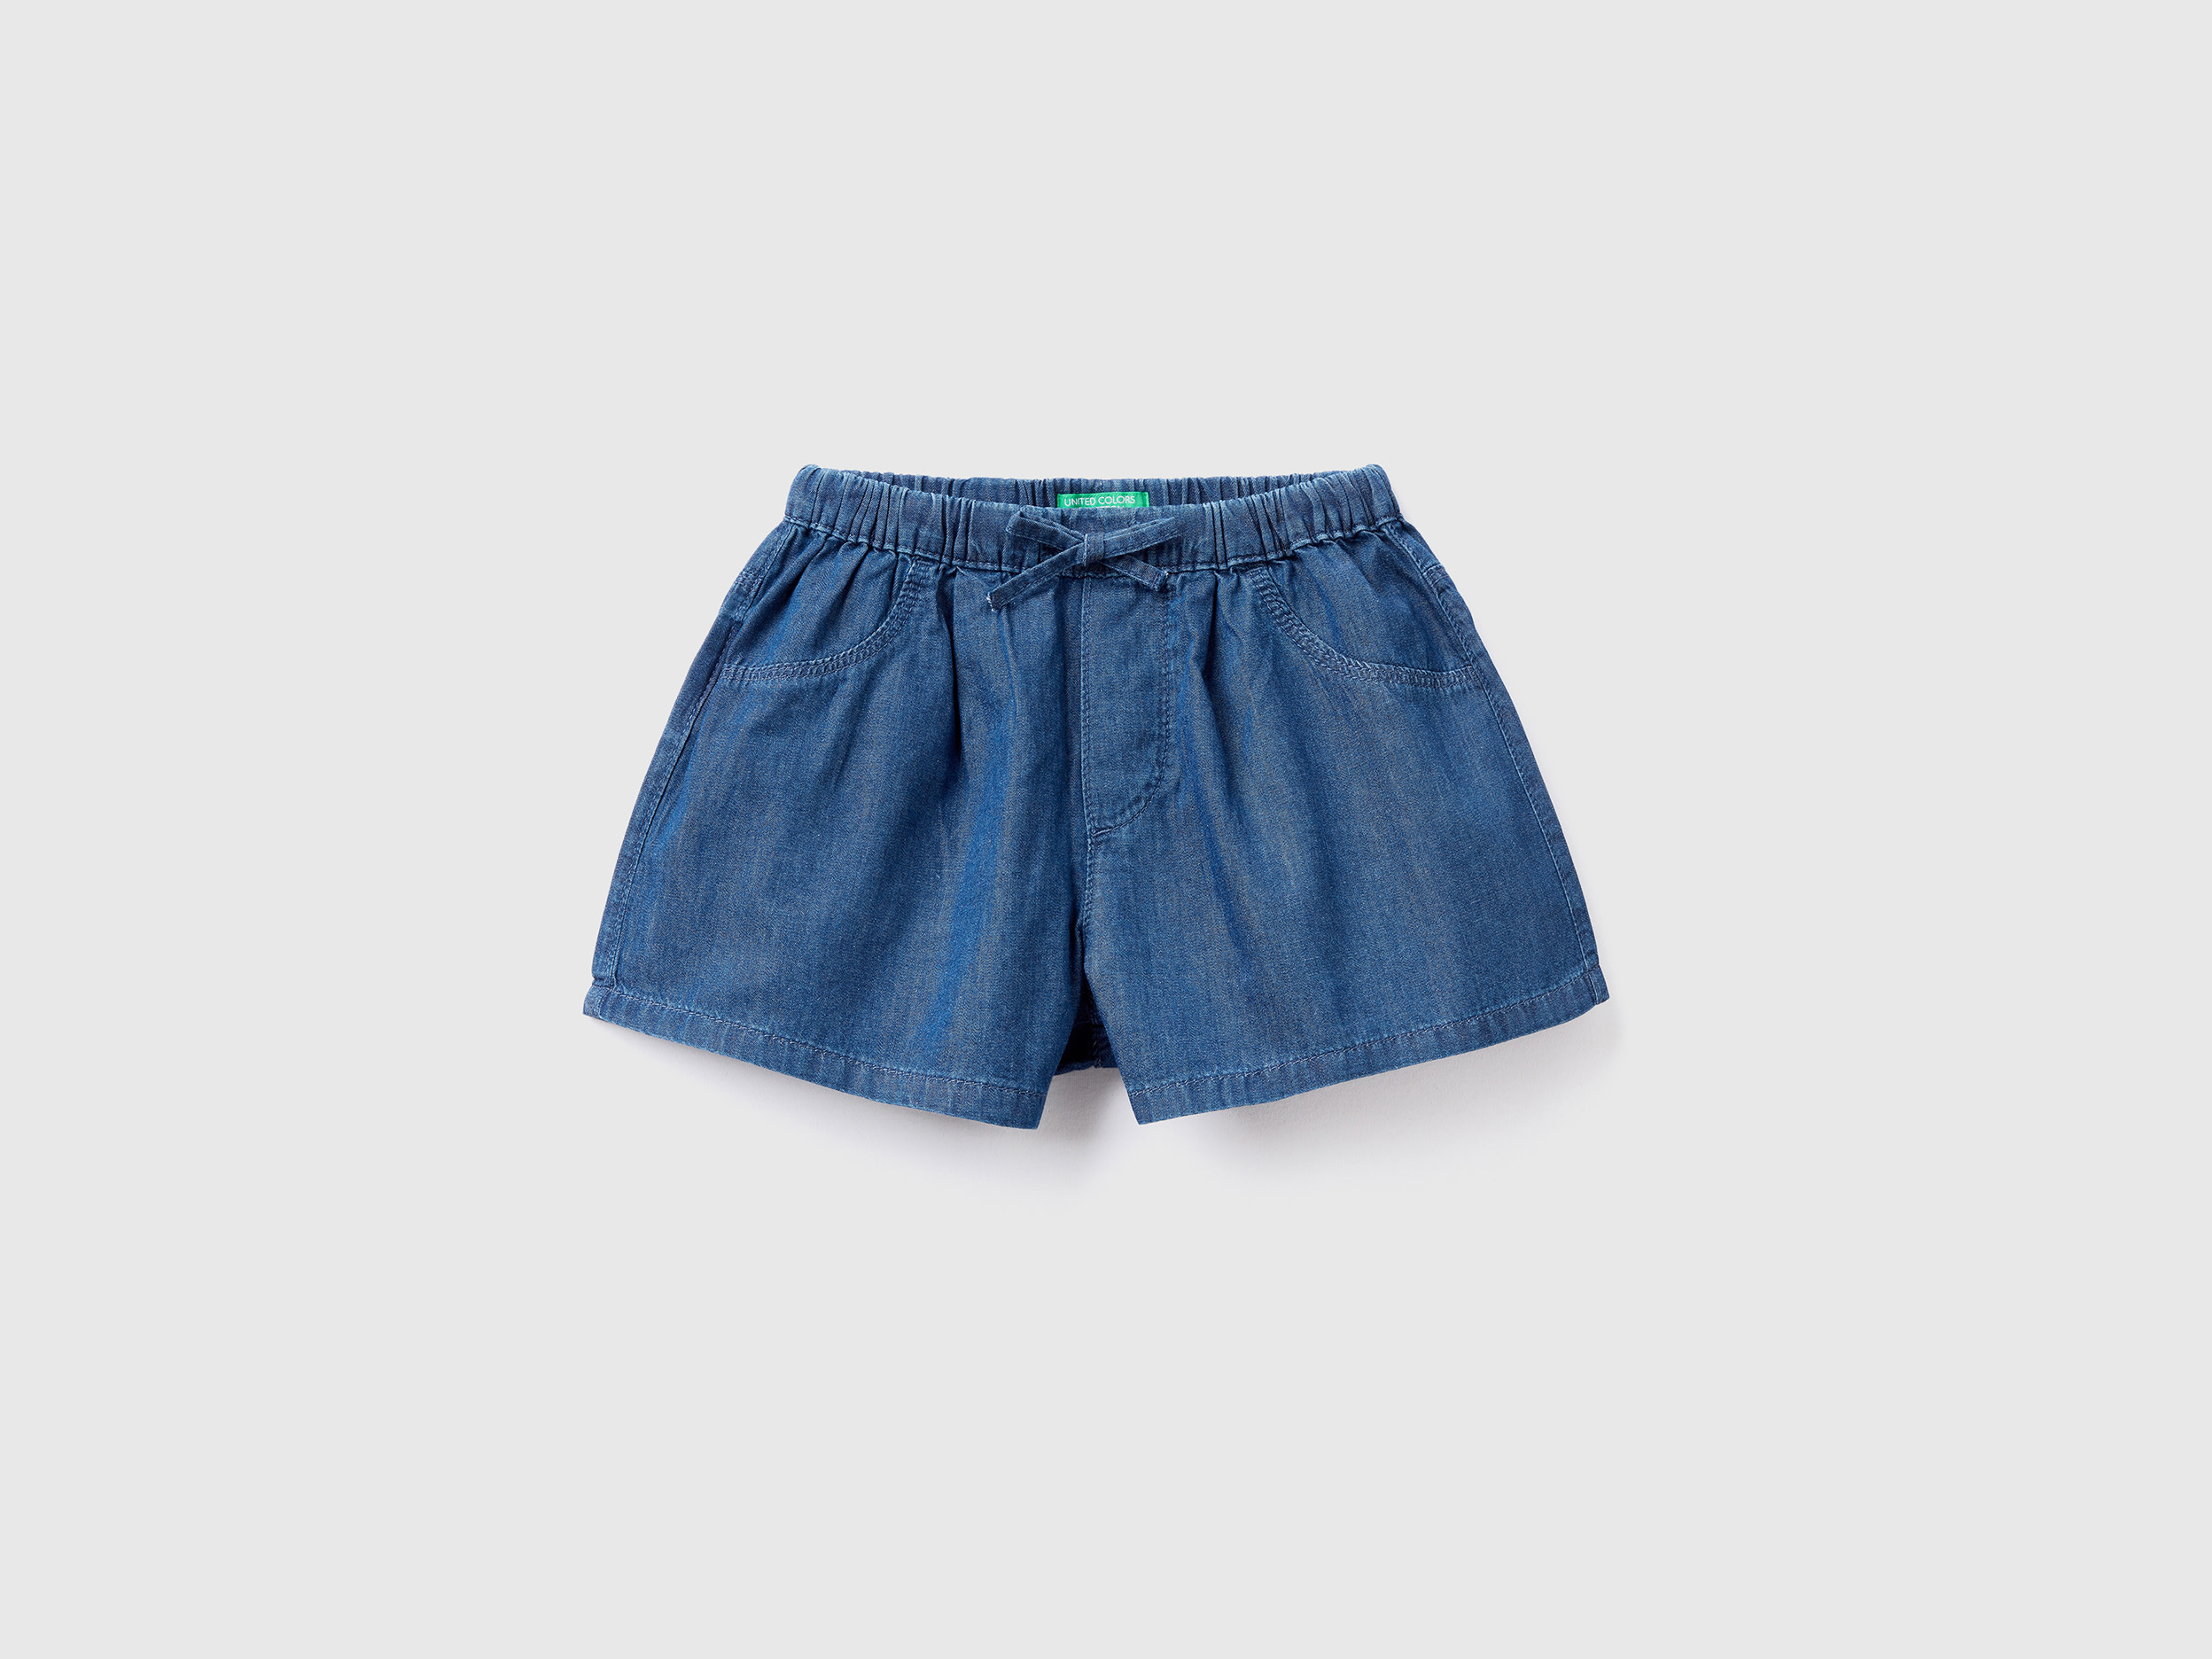 Benetton, Lightweight Denim-look Shorts, size 3-4, Blue, Kids